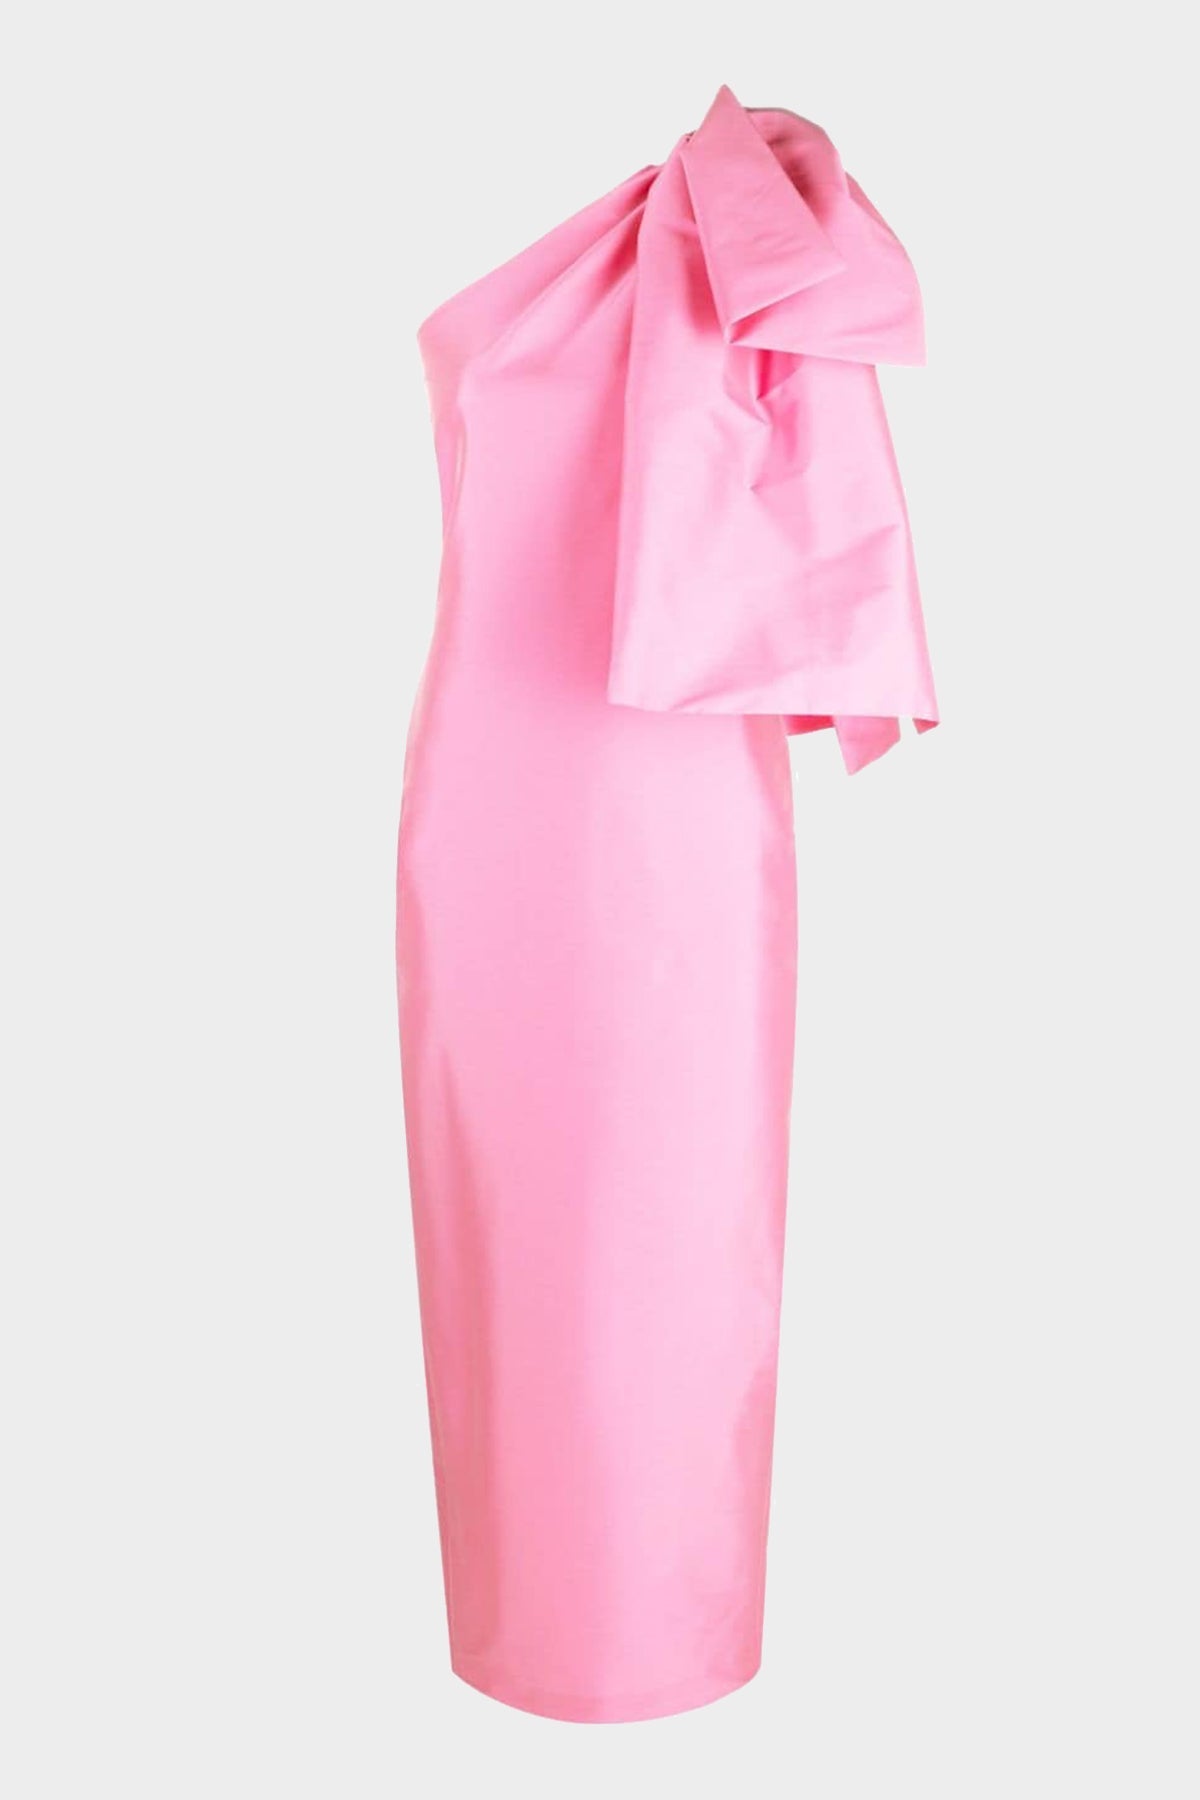 Josselin Midi Dress in Hot Pink - shop-olivia.com